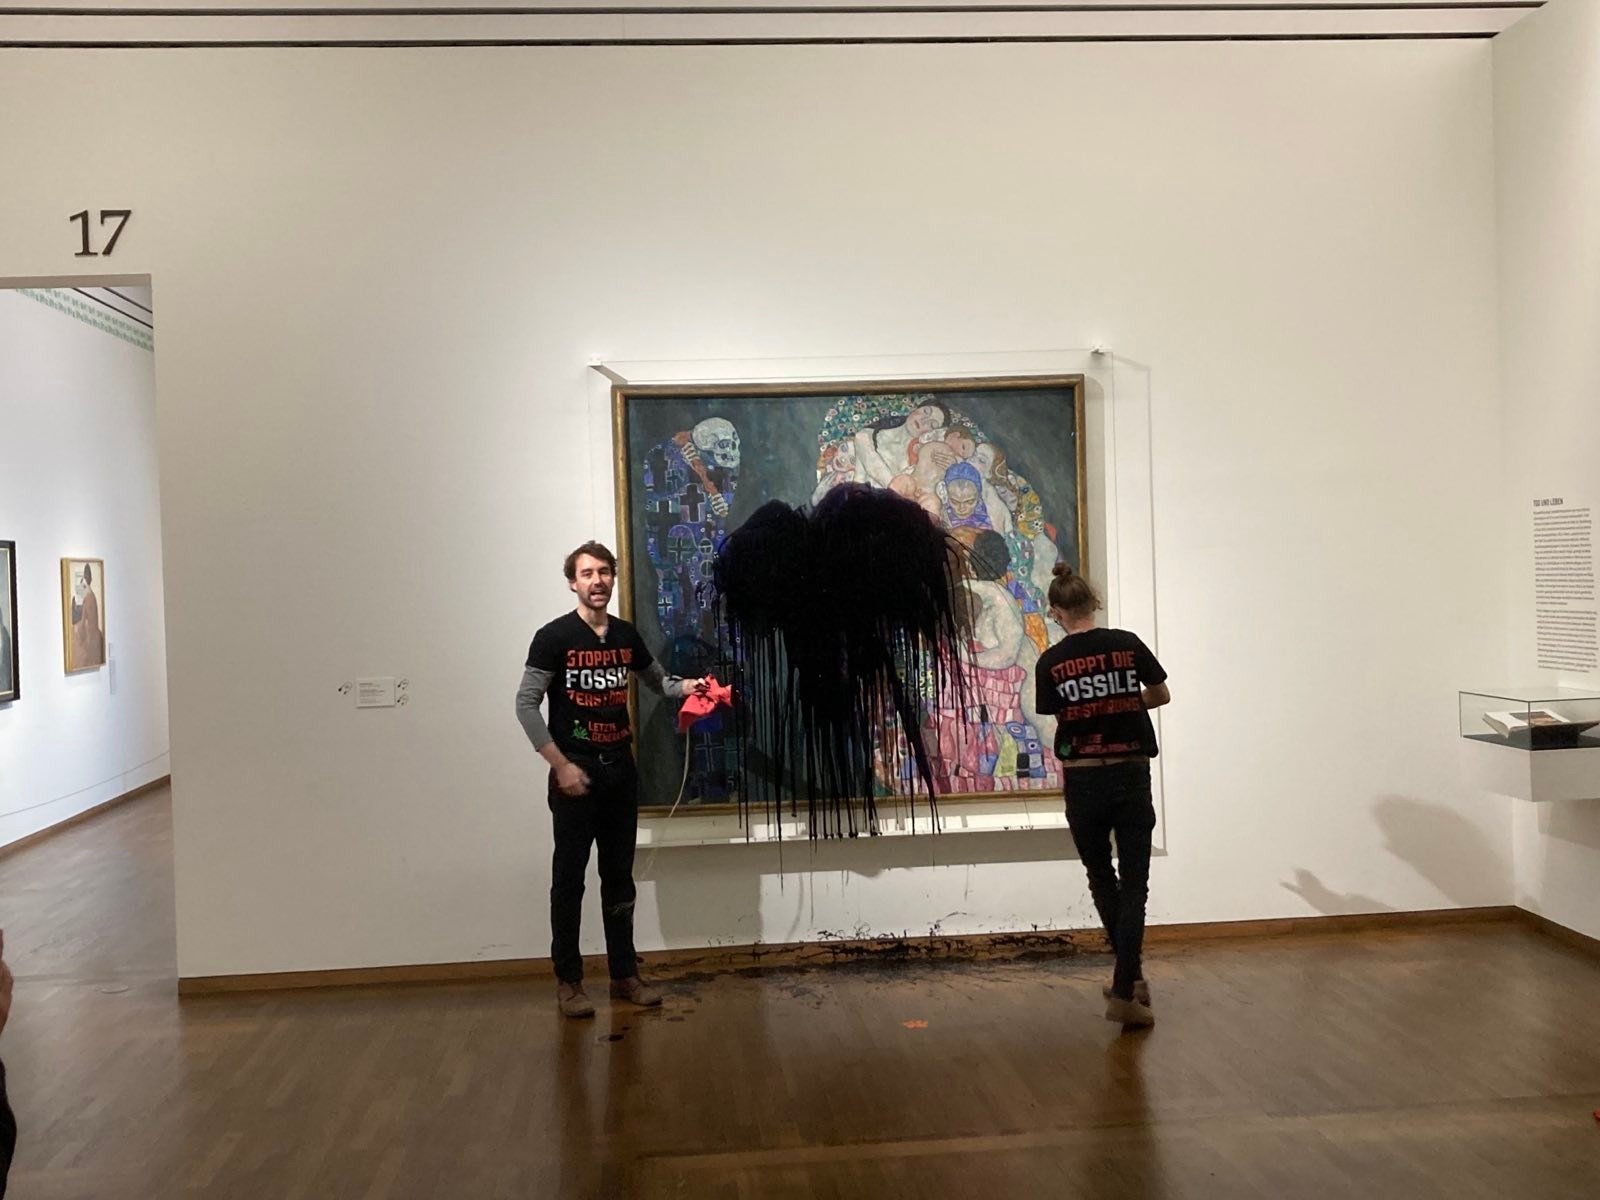 Activistes llancen petroli sobre un quadre de Klimt en un museu de Viena